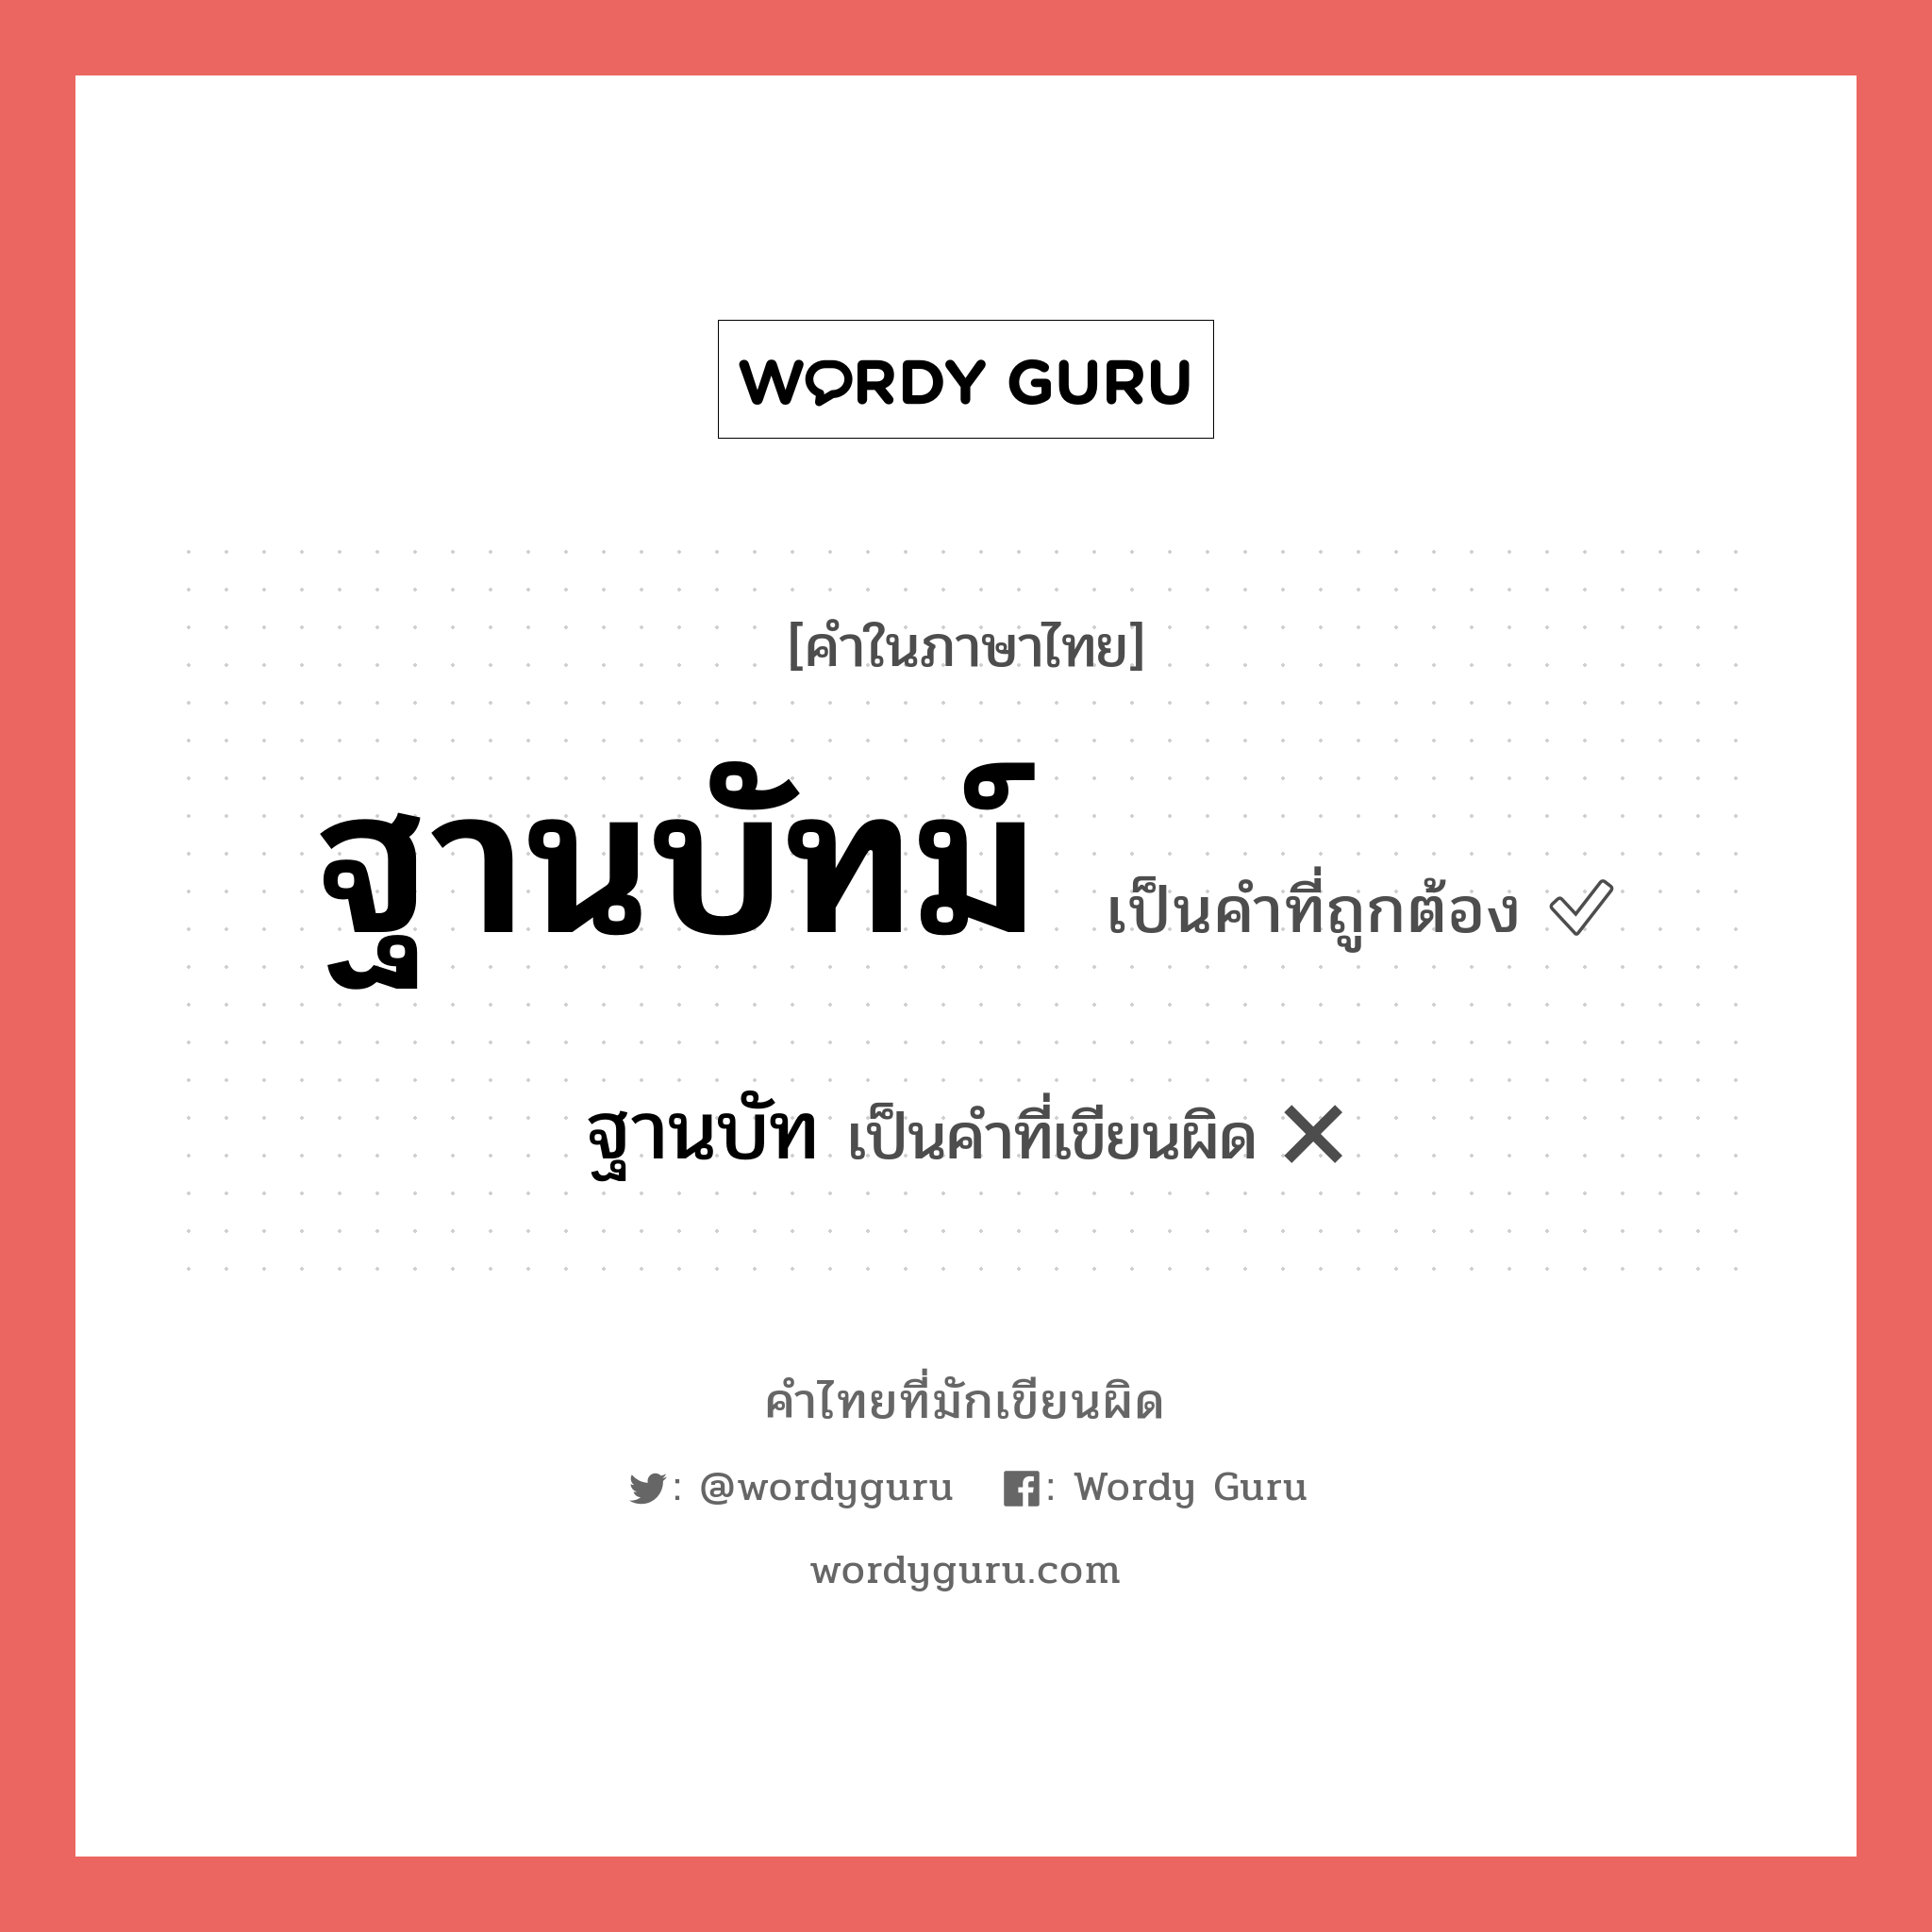 ฐานบัท หรือ ฐานบัทม์ คำไหนเขียนถูก?, คำในภาษาไทยที่มักเขียนผิด ฐานบัท คำที่ผิด ❌ ฐานบัทม์